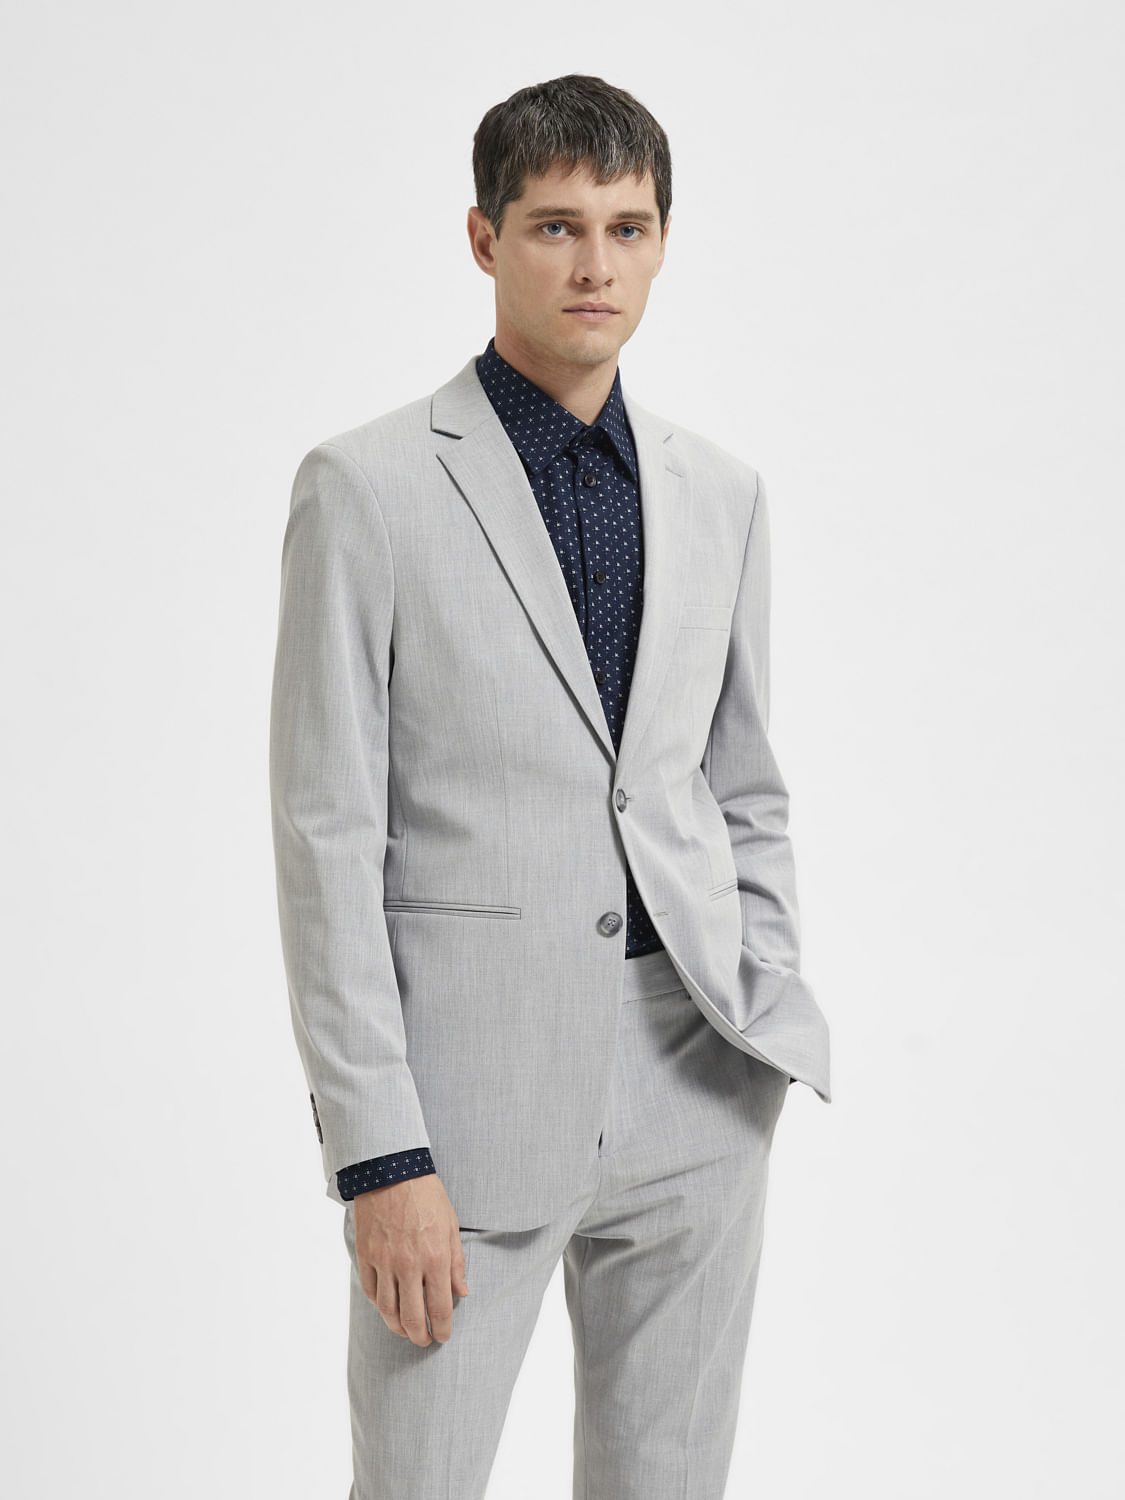 Details more than 133 grey color coat suit